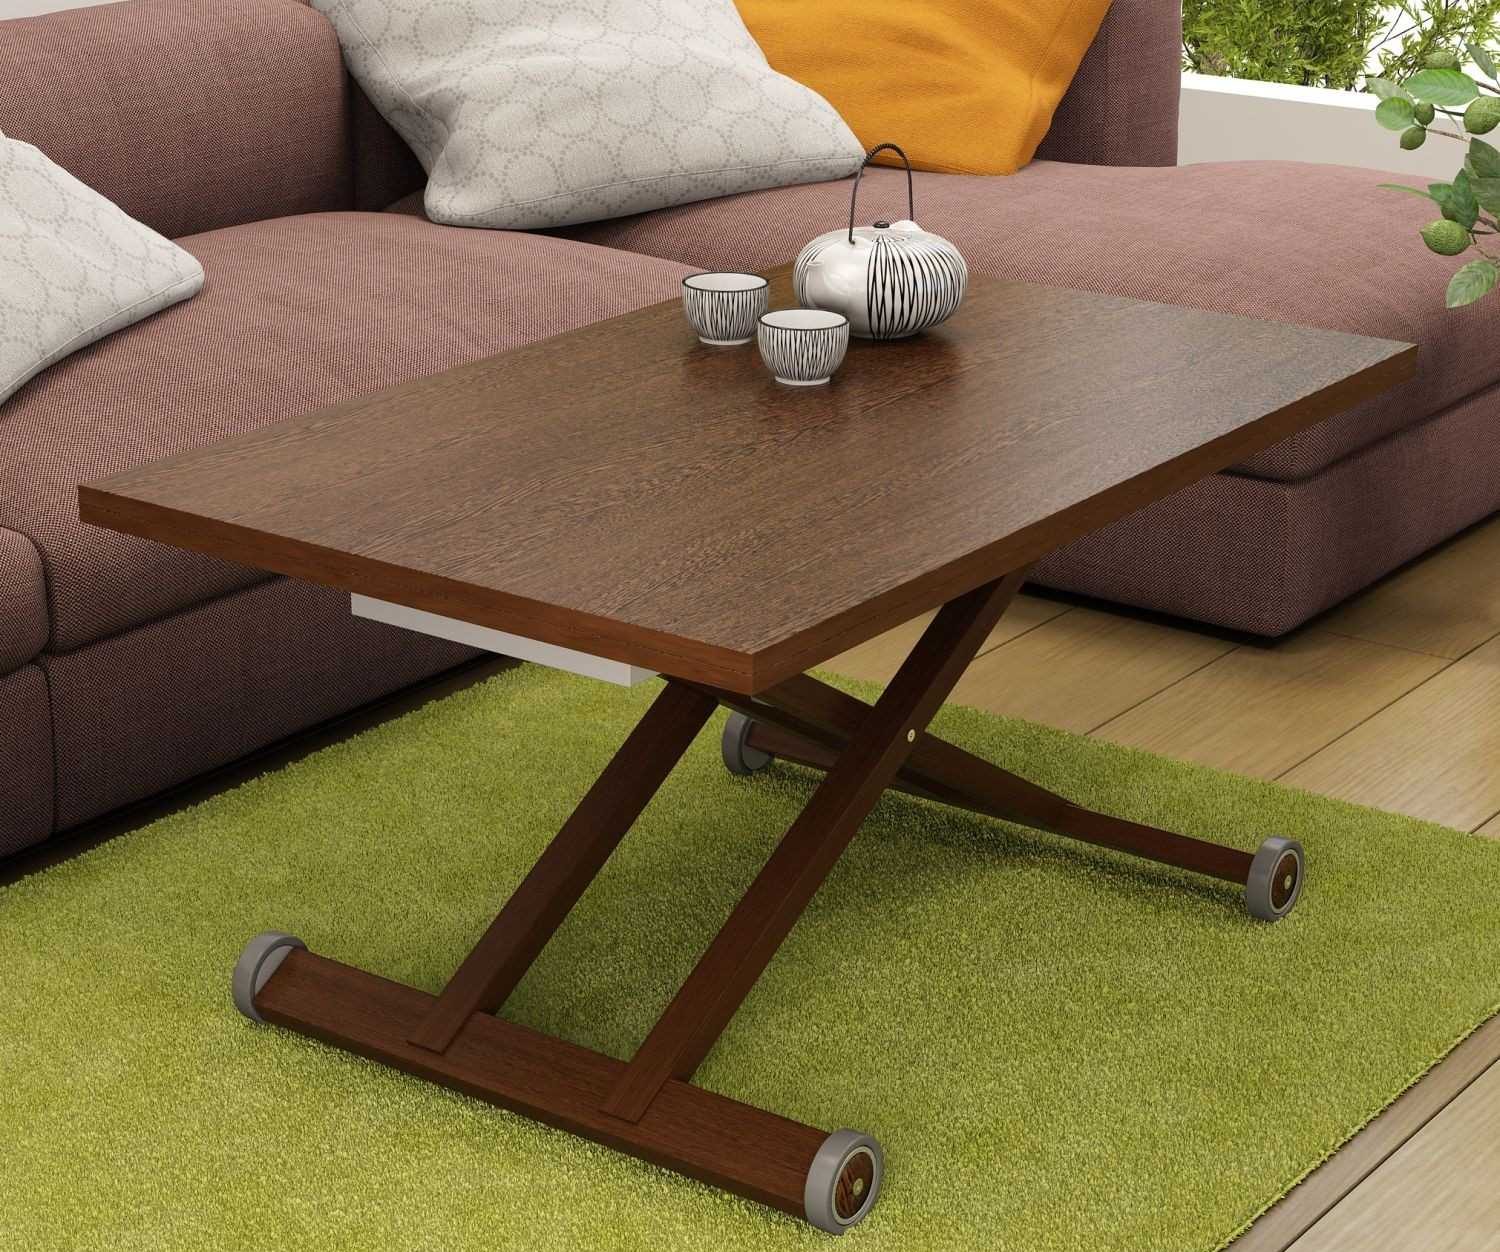 طاولة خشبية